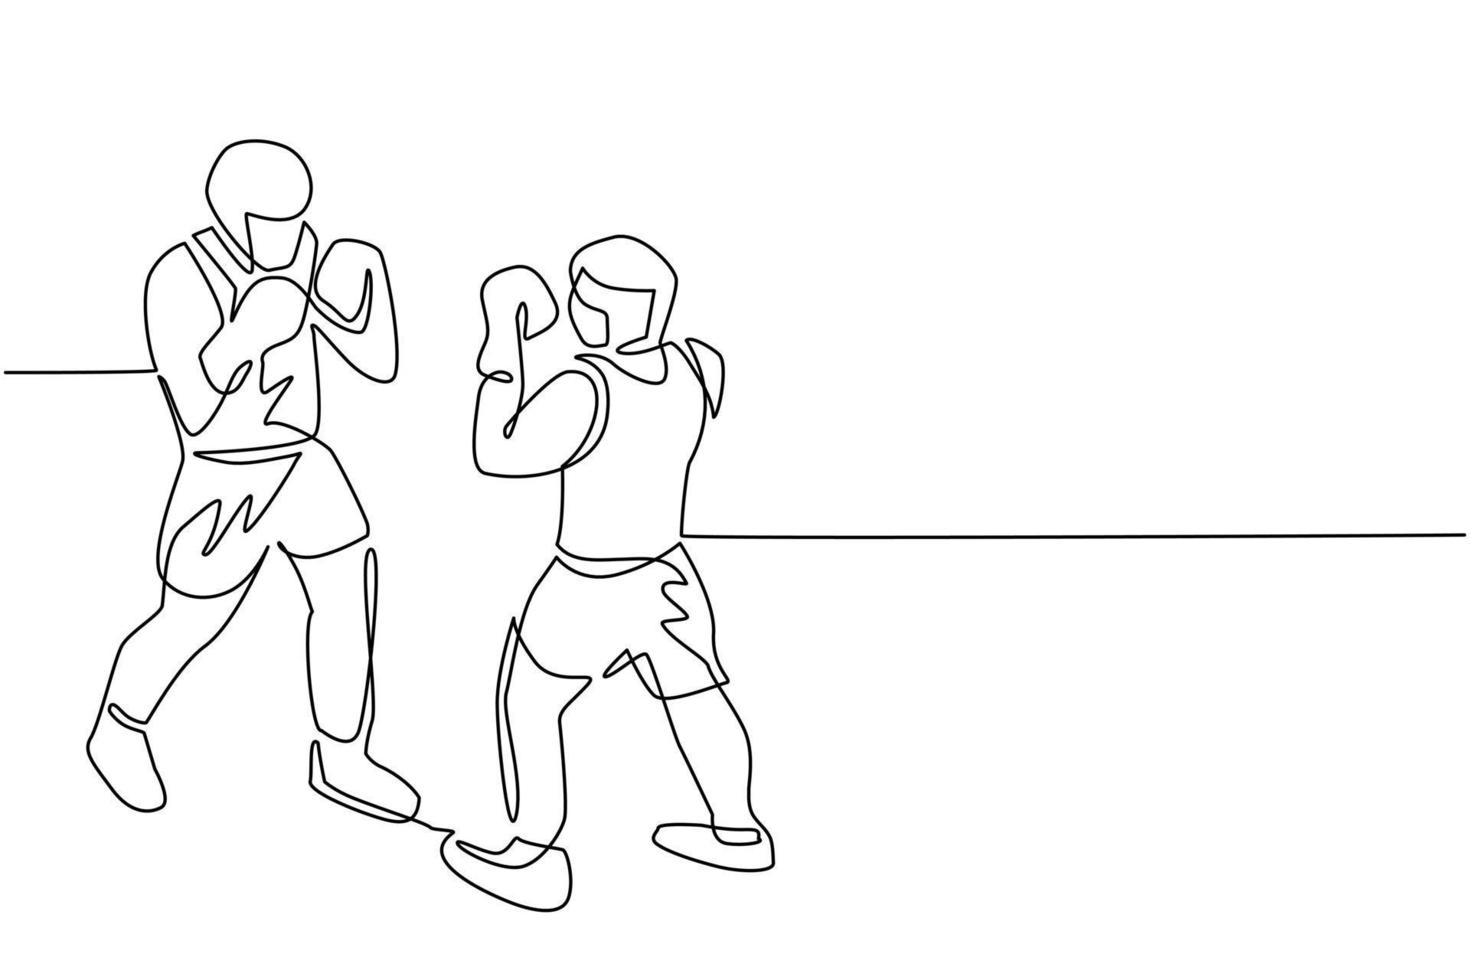 enkele doorlopende lijntekening boksers vechten op ring, tegenstanders in korte broek en handschoenen vechten op arena met schijnwerpers en touwen. wedstrijd. gevaarlijke sporten. één lijn tekenen ontwerp vectorillustratie vector